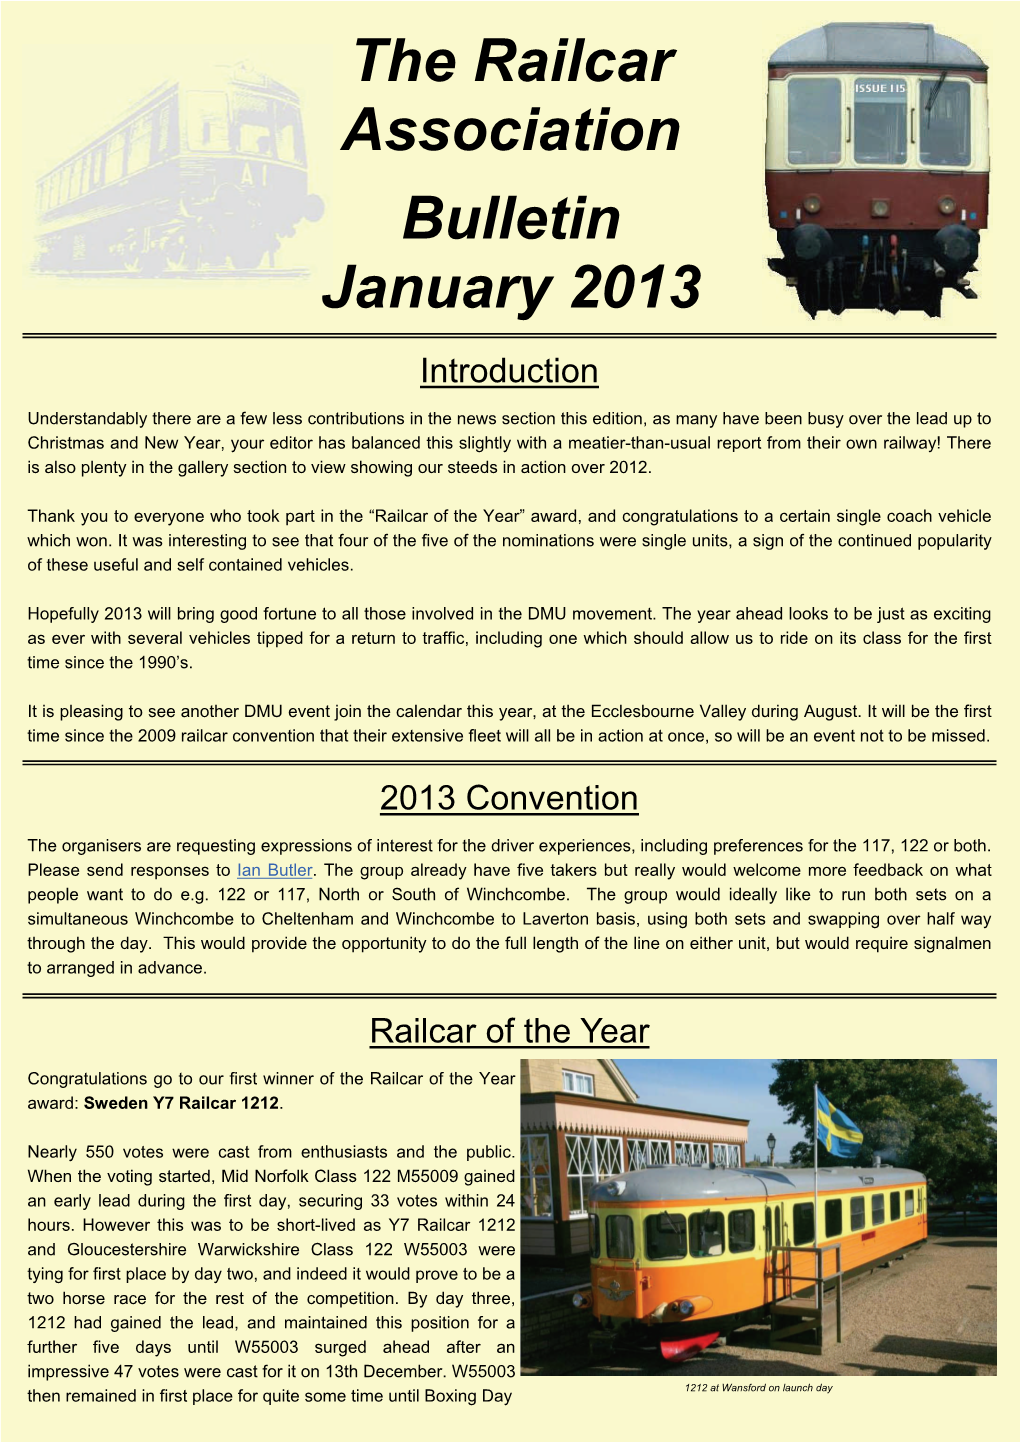 The Railcar Association Bulletin January 2013